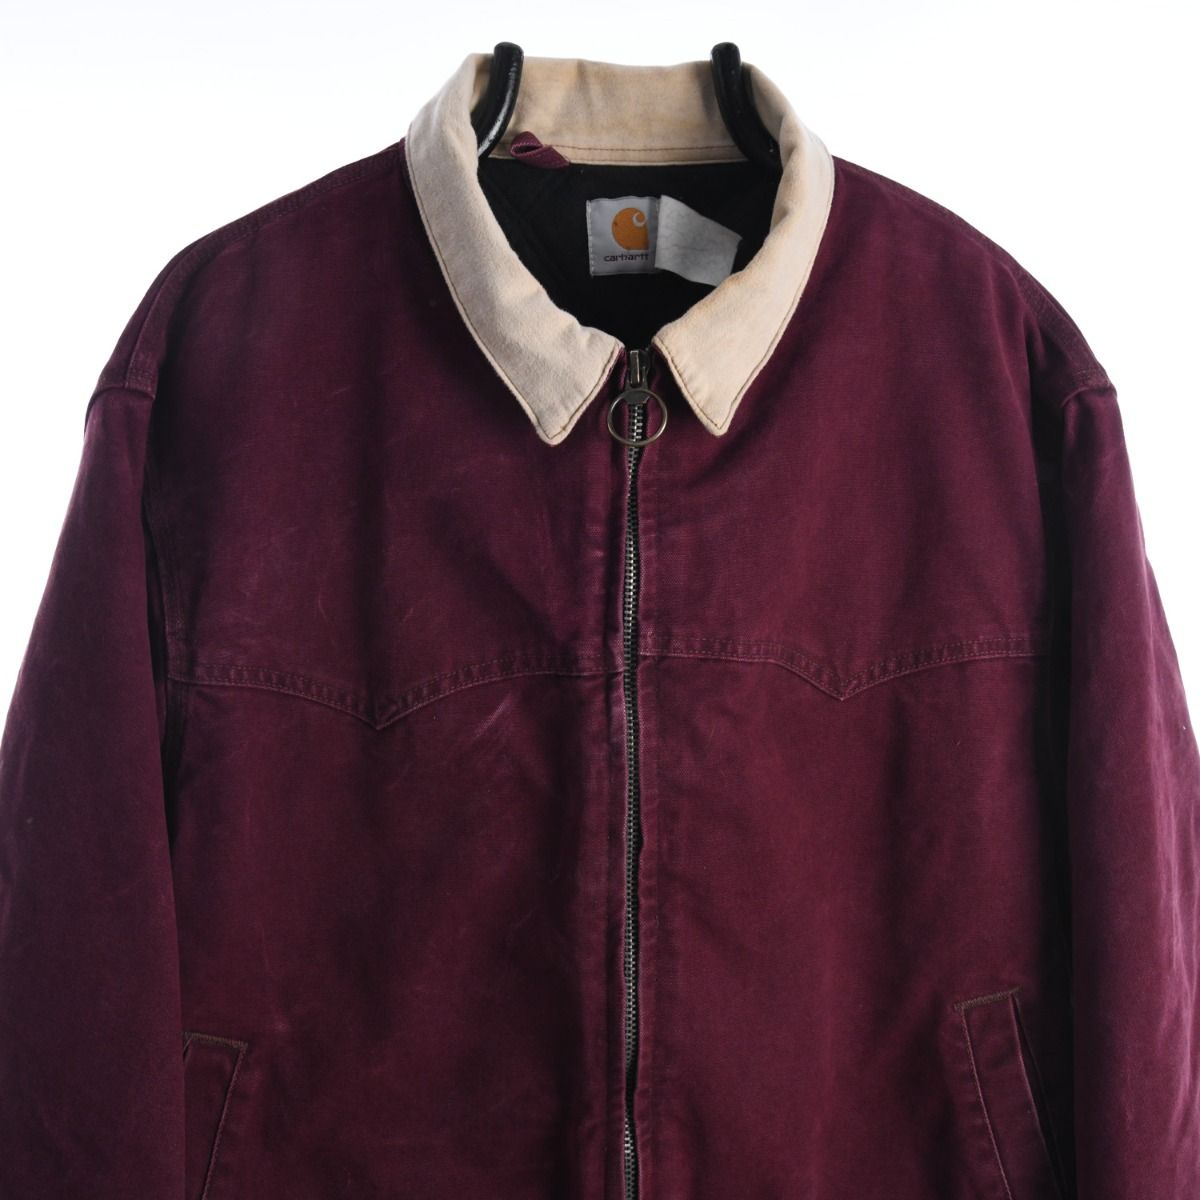 Carhartt 1990s Jacket